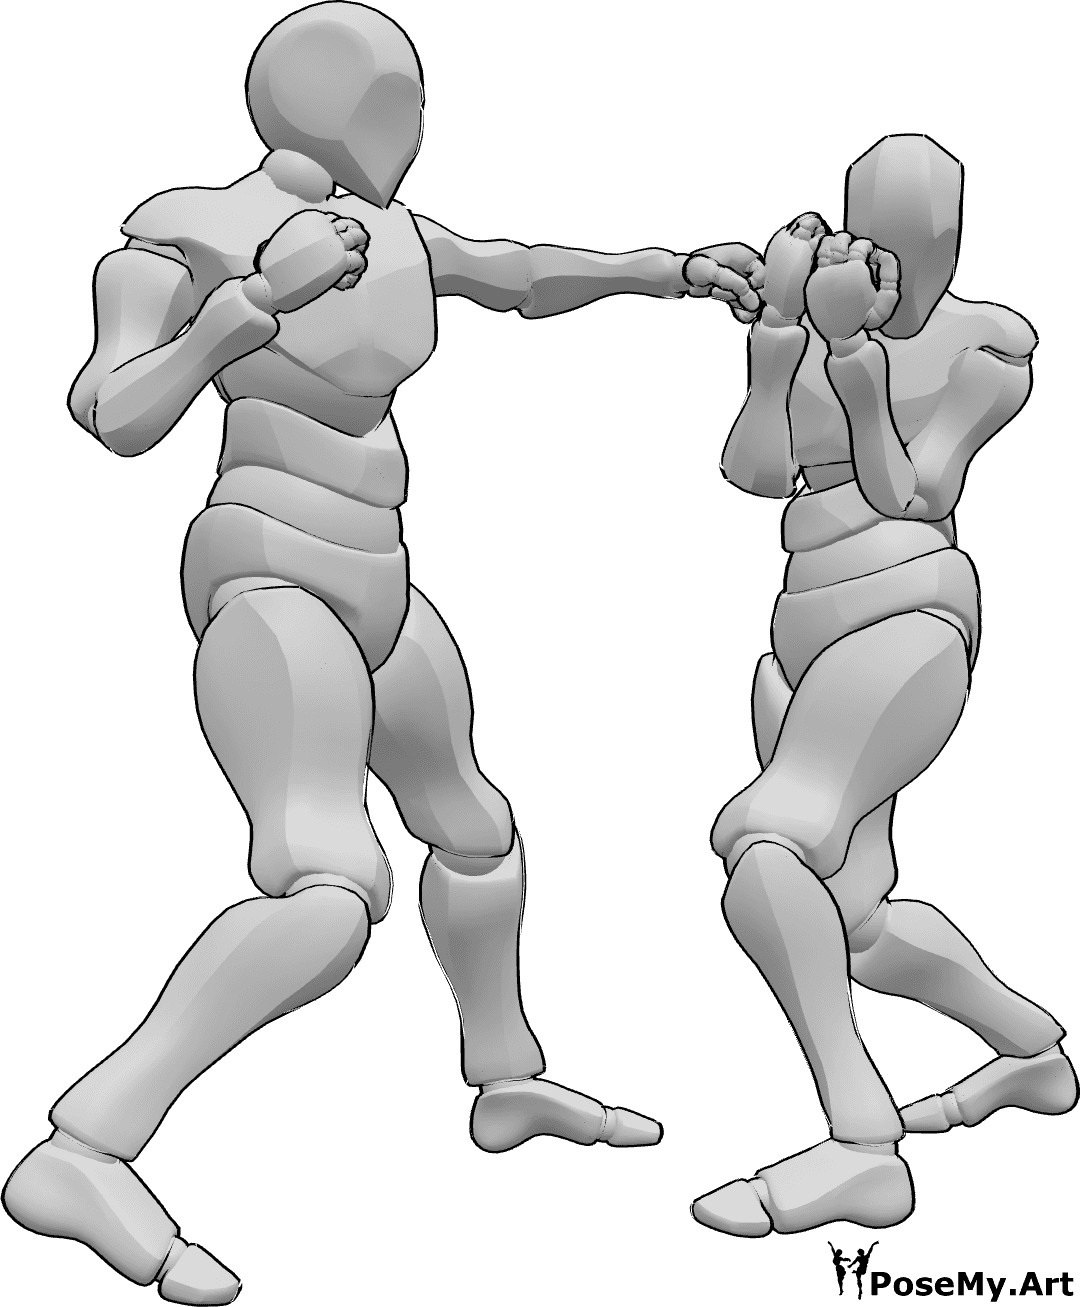 Referencia de poses- Esquivando pose de gancho de izquierda - Dos hombres están boxeando, uno de ellos lanza un gancho de izquierda, el otro esquiva el golpe